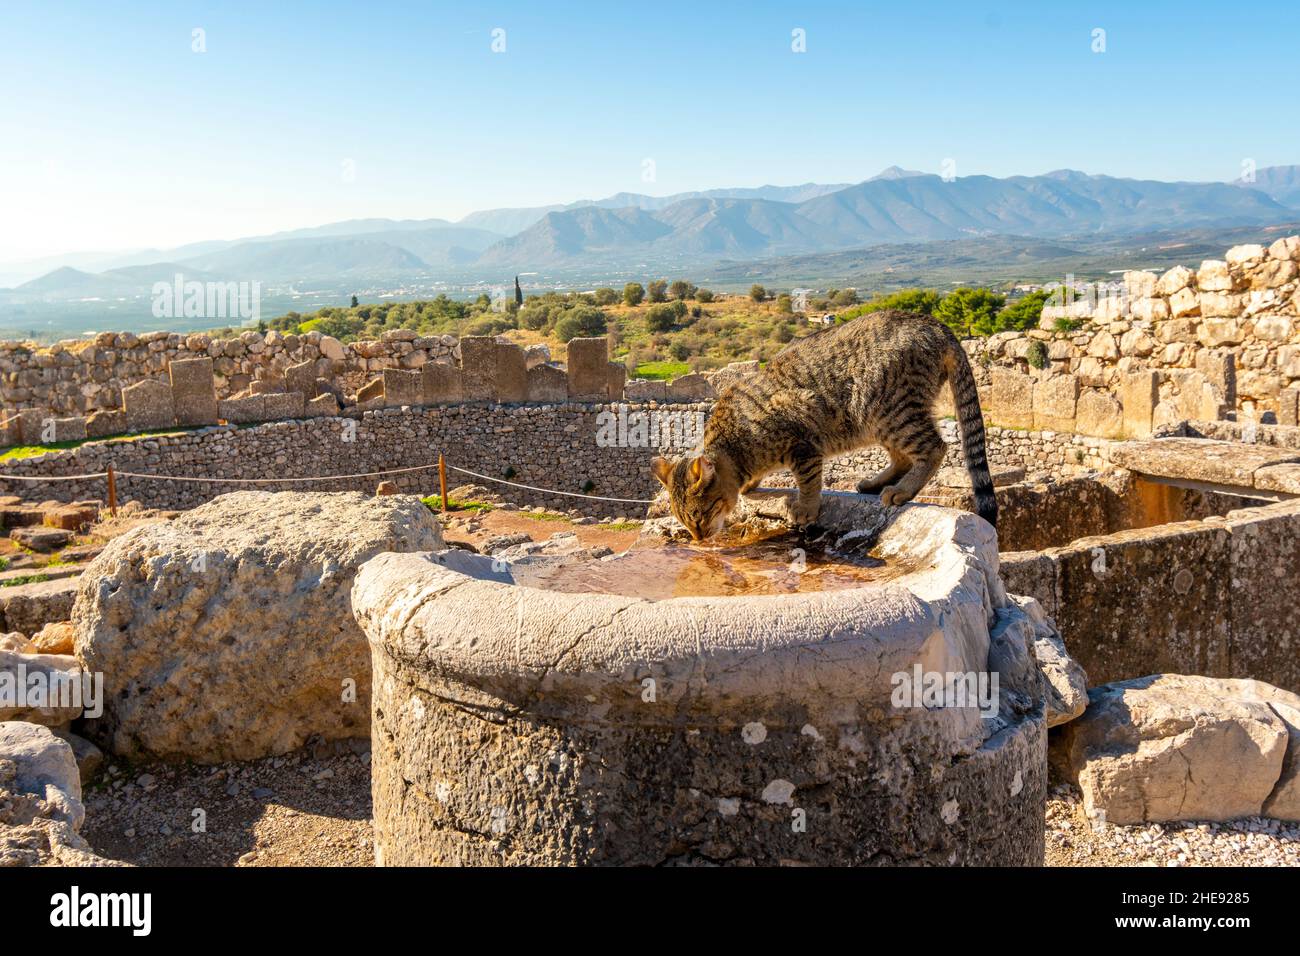 Eine streunende griechische tabby Katze trinkt Wasser aus einer alten Ruine in der Festung von Mycenae, Griechenland. Stockfoto